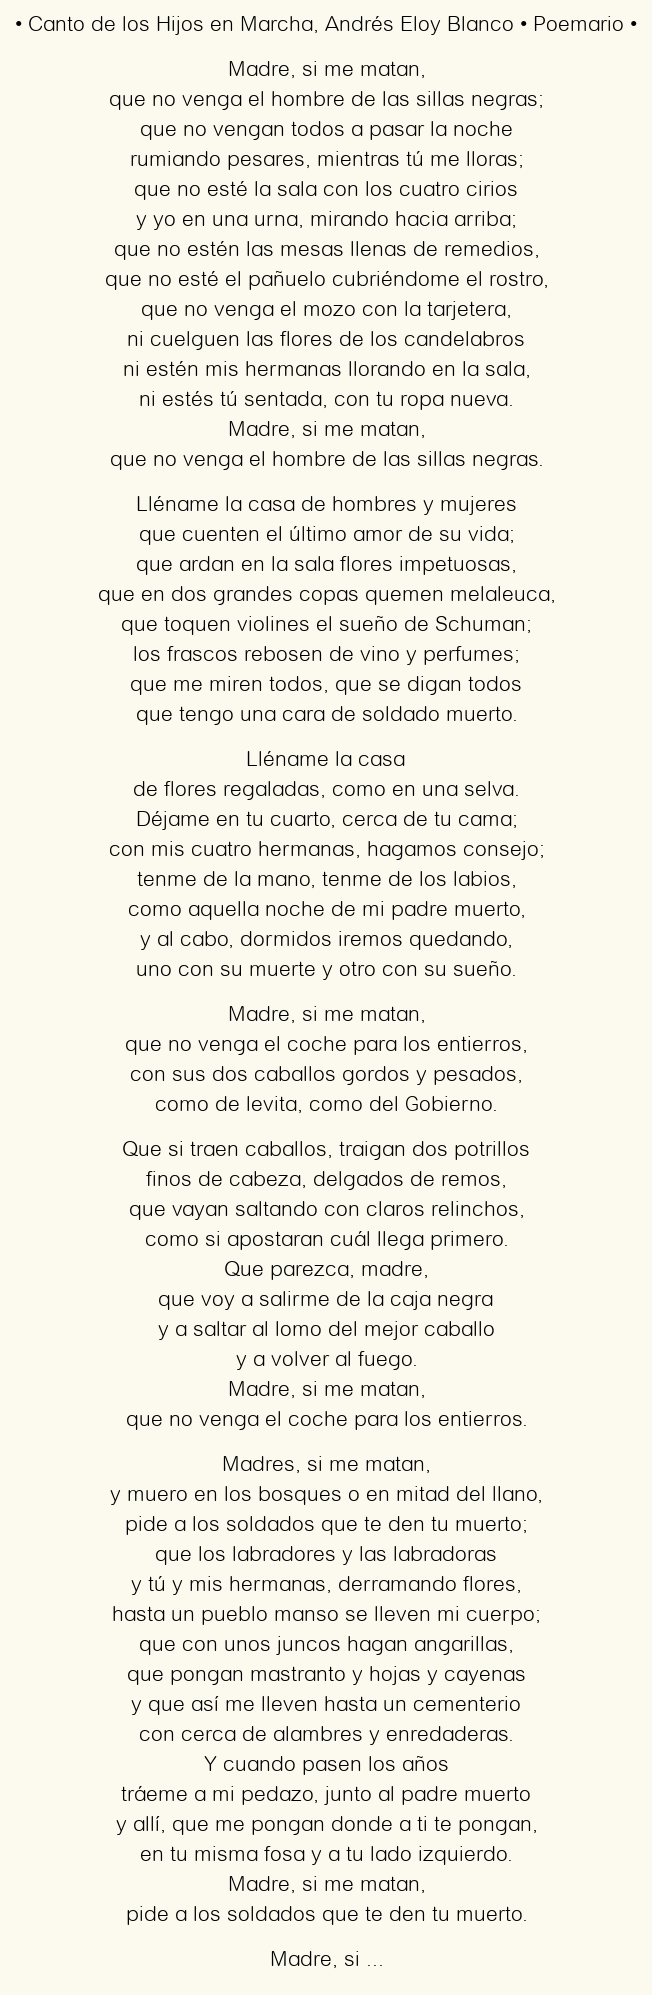 Imagen con el poema Canto de los Hijos en Marcha, por Andrés Eloy Blanco